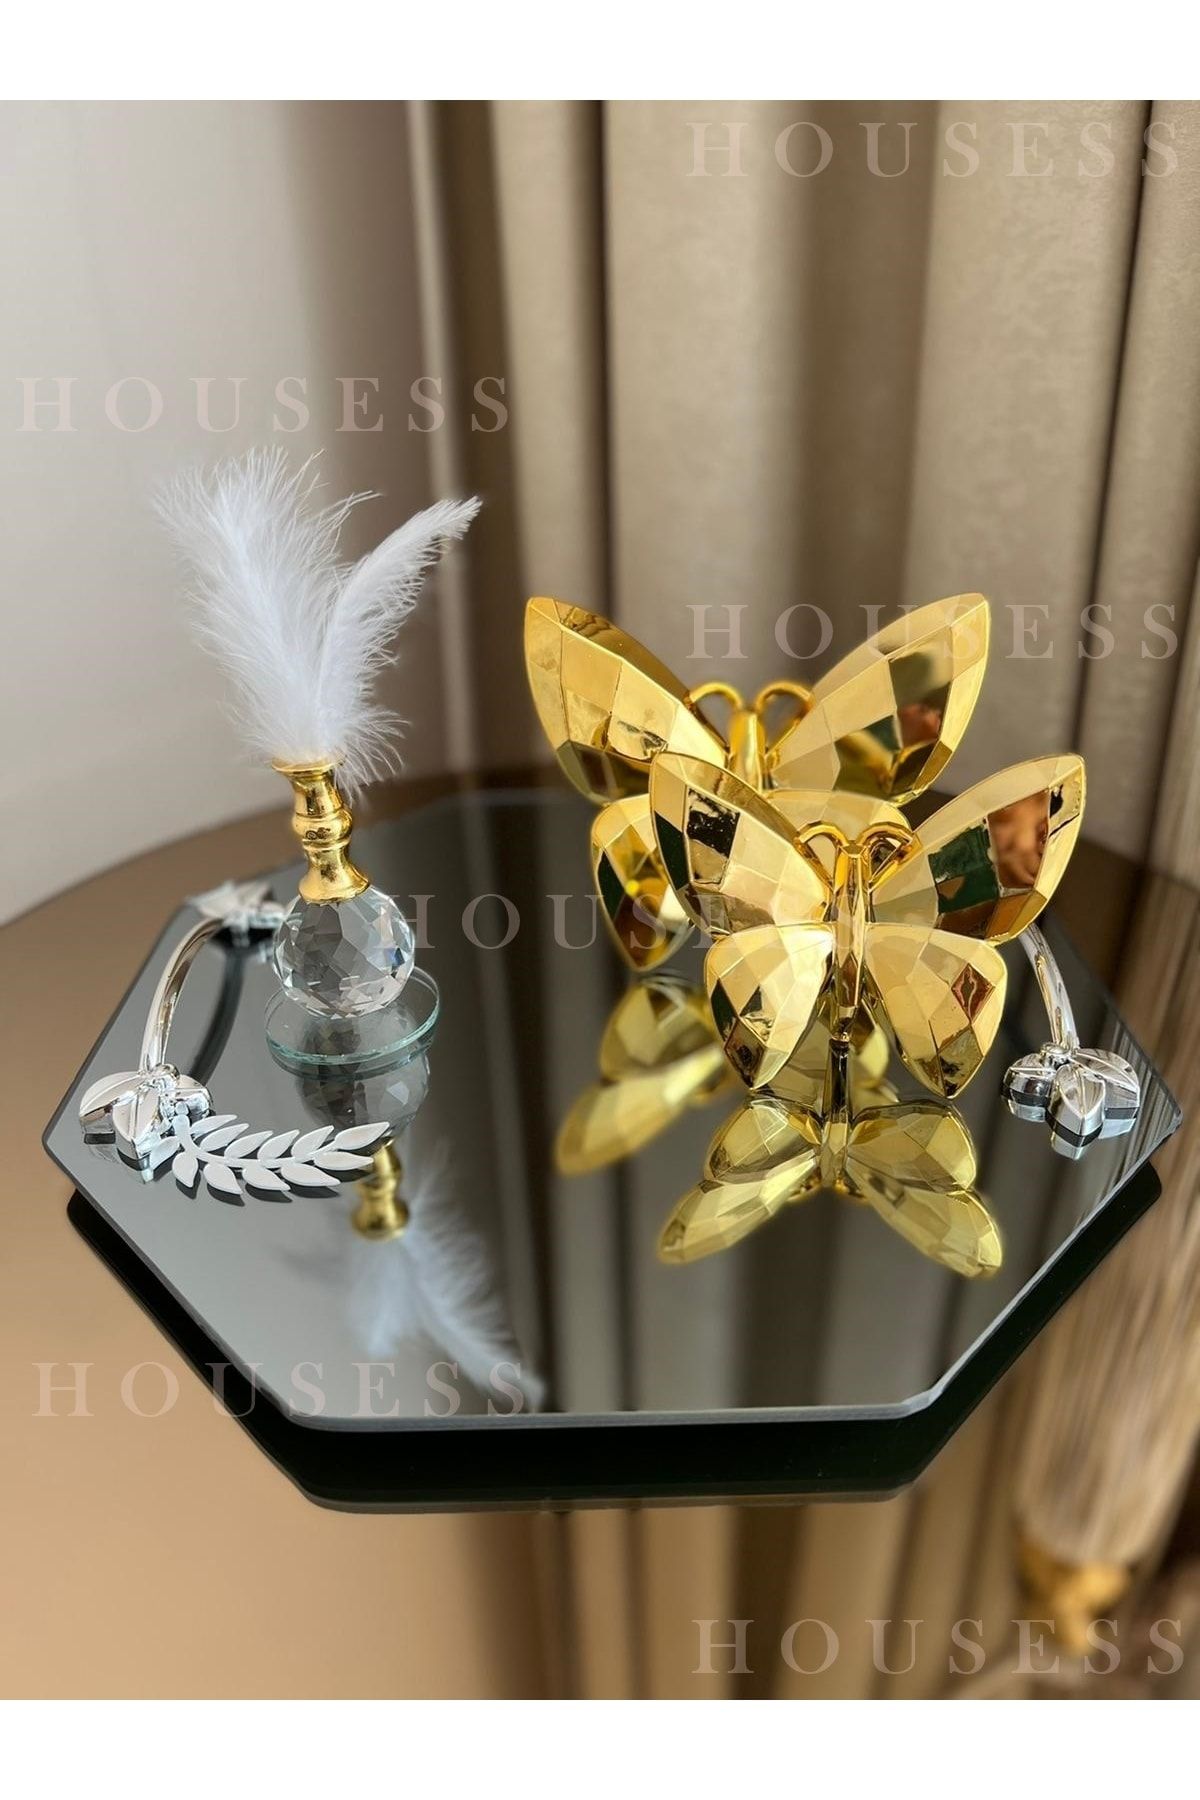 Housess Dekoratif Aynalı Yaprak Detaylı Tepsi Ve 2'li Gold Kelebek Ve Gold Tüylük